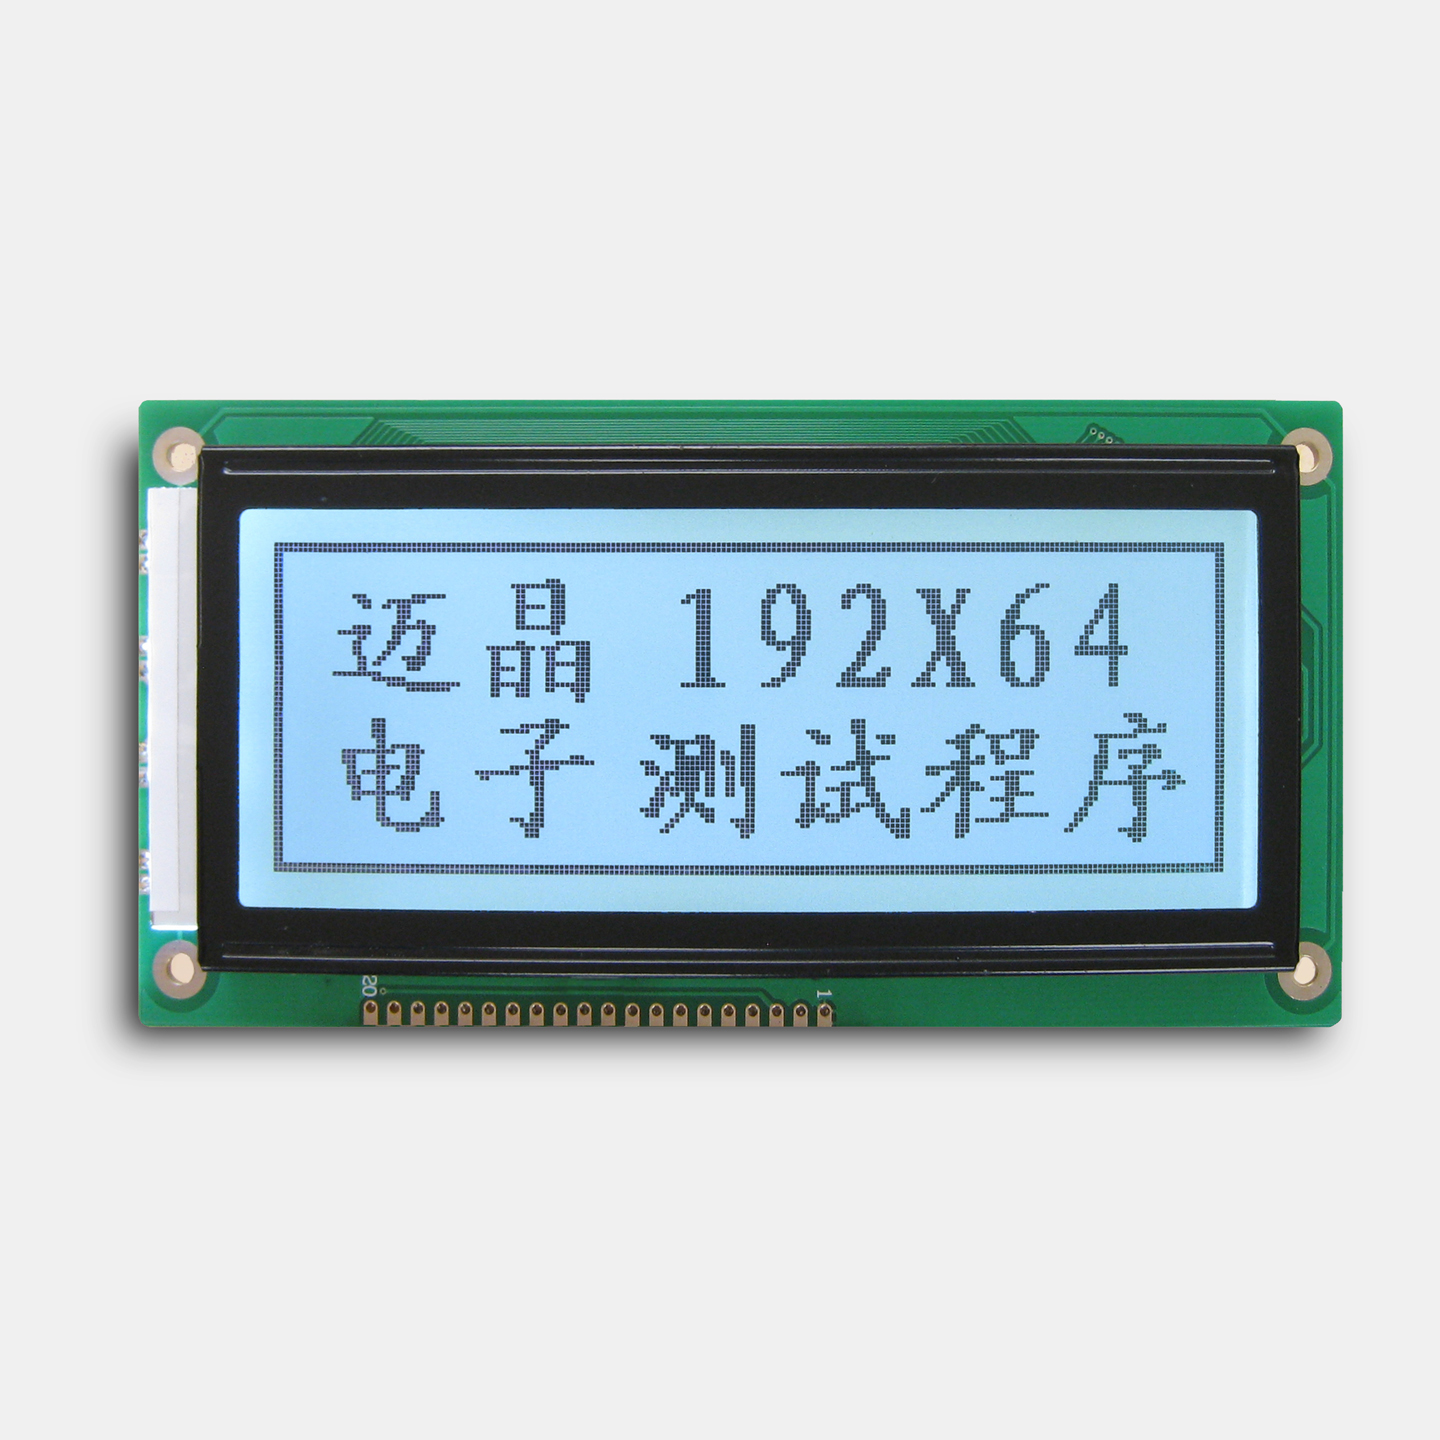 MJ19264A，液晶屏厂家深圳迈晶电子